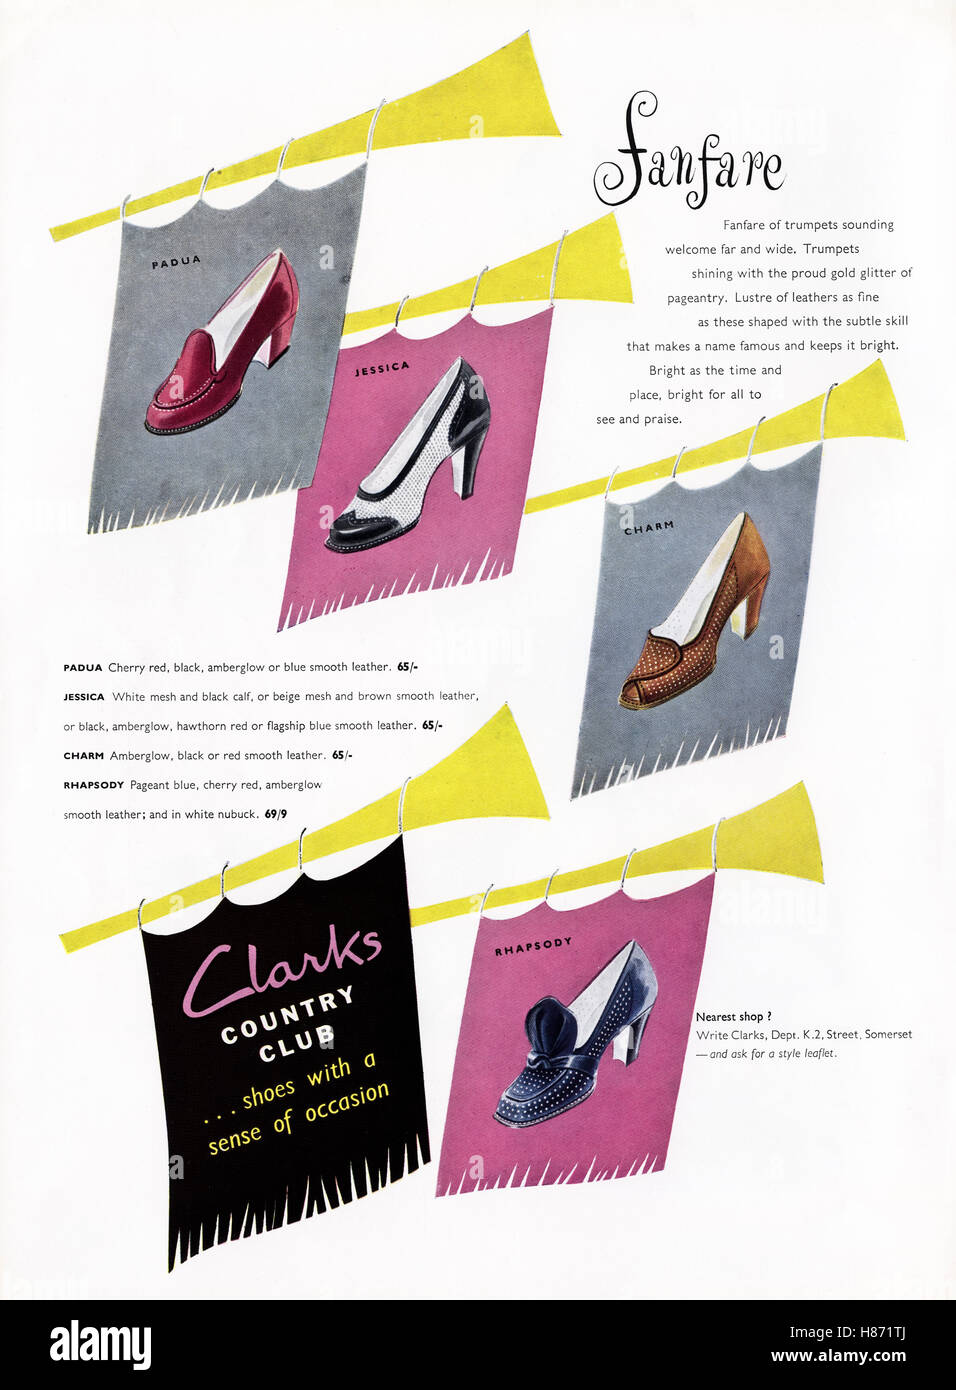 1950 Werbung Werbung von original alten Vintage 50s englische Magazin datiert 1953 Werbung für Clarks Country Club Schuhe für Damen Stockfoto